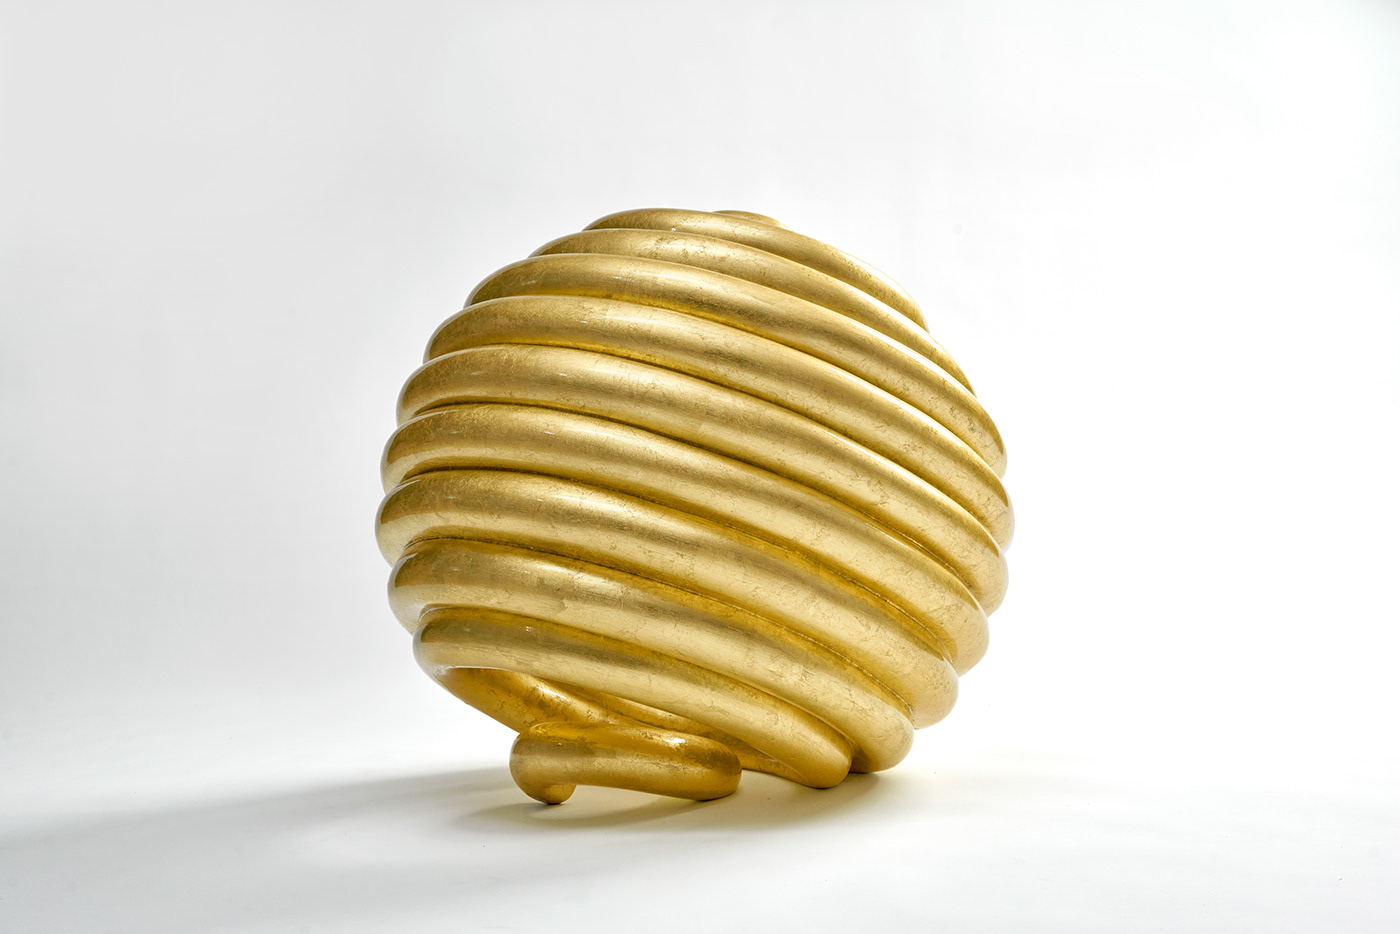 art Fibonacci gold Golden Ratio meditation sculpture time